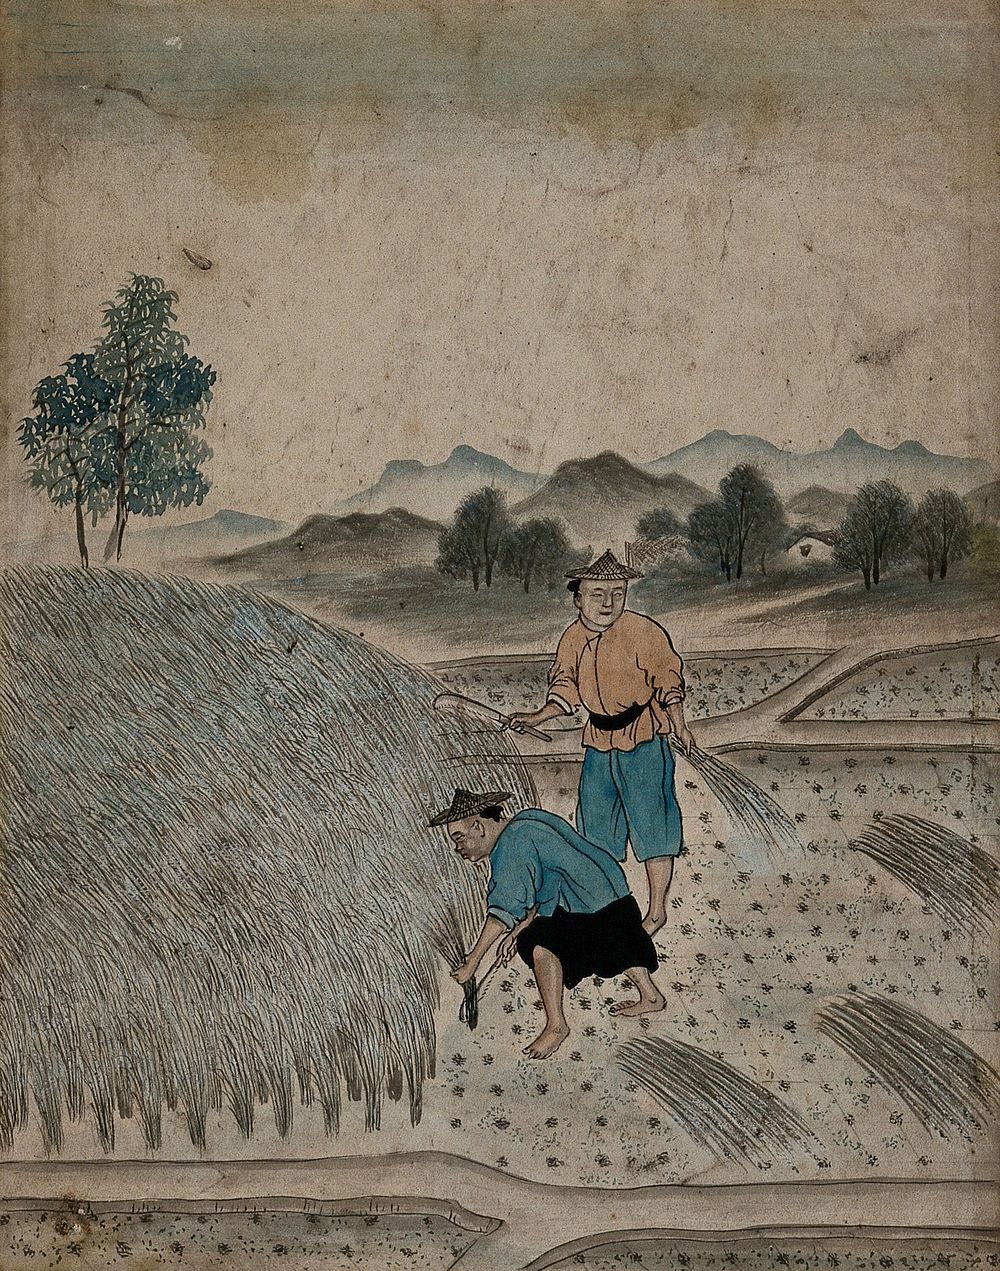 Chinese men harvesting. Gouache.